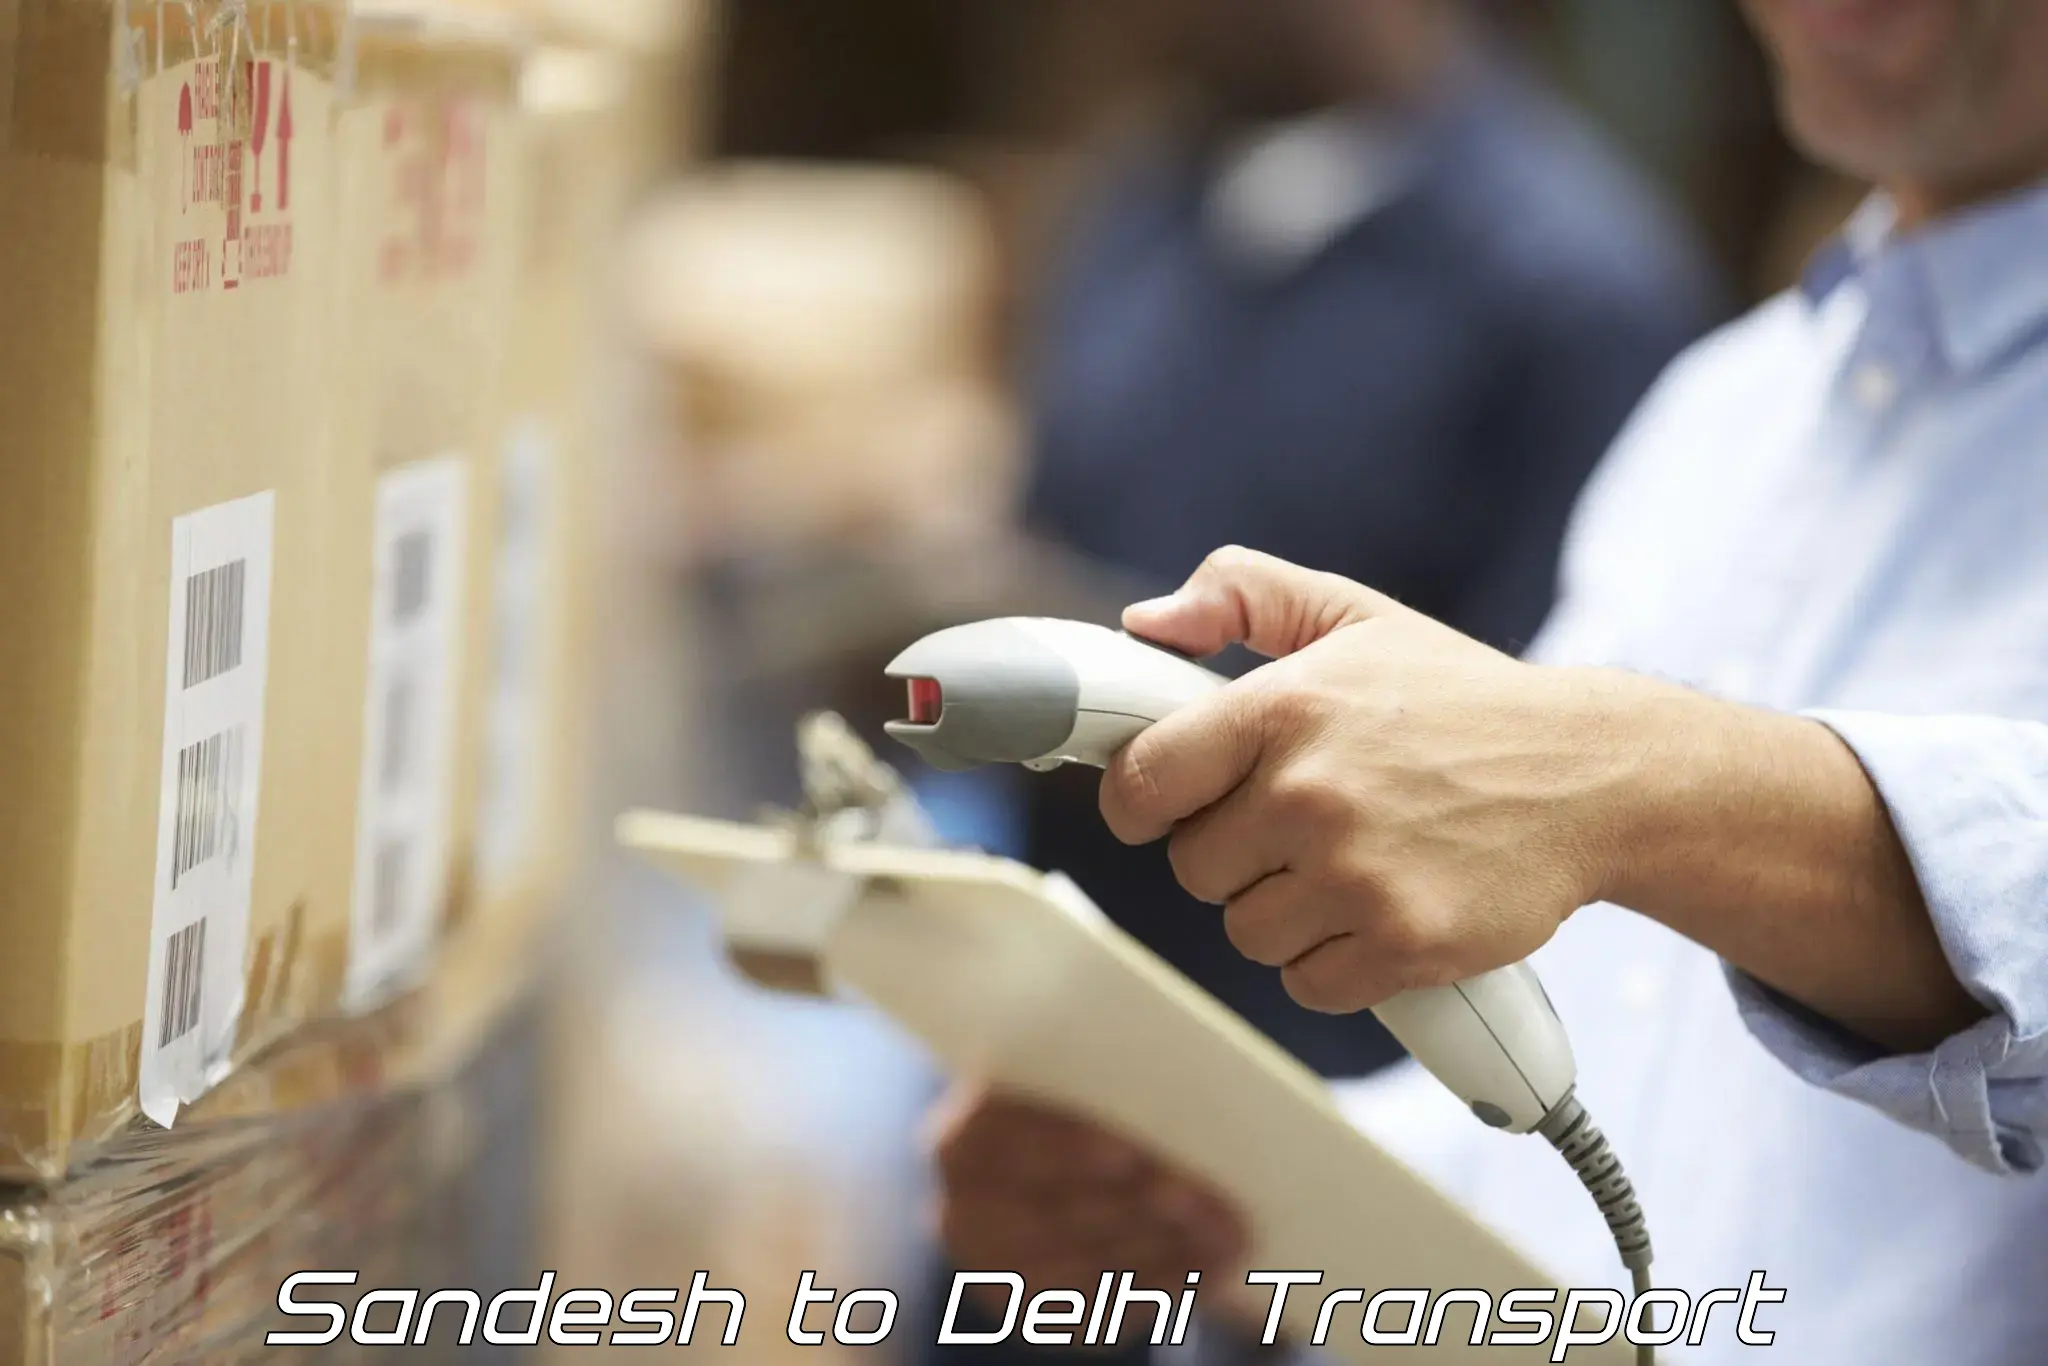 Online transport service Sandesh to East Delhi